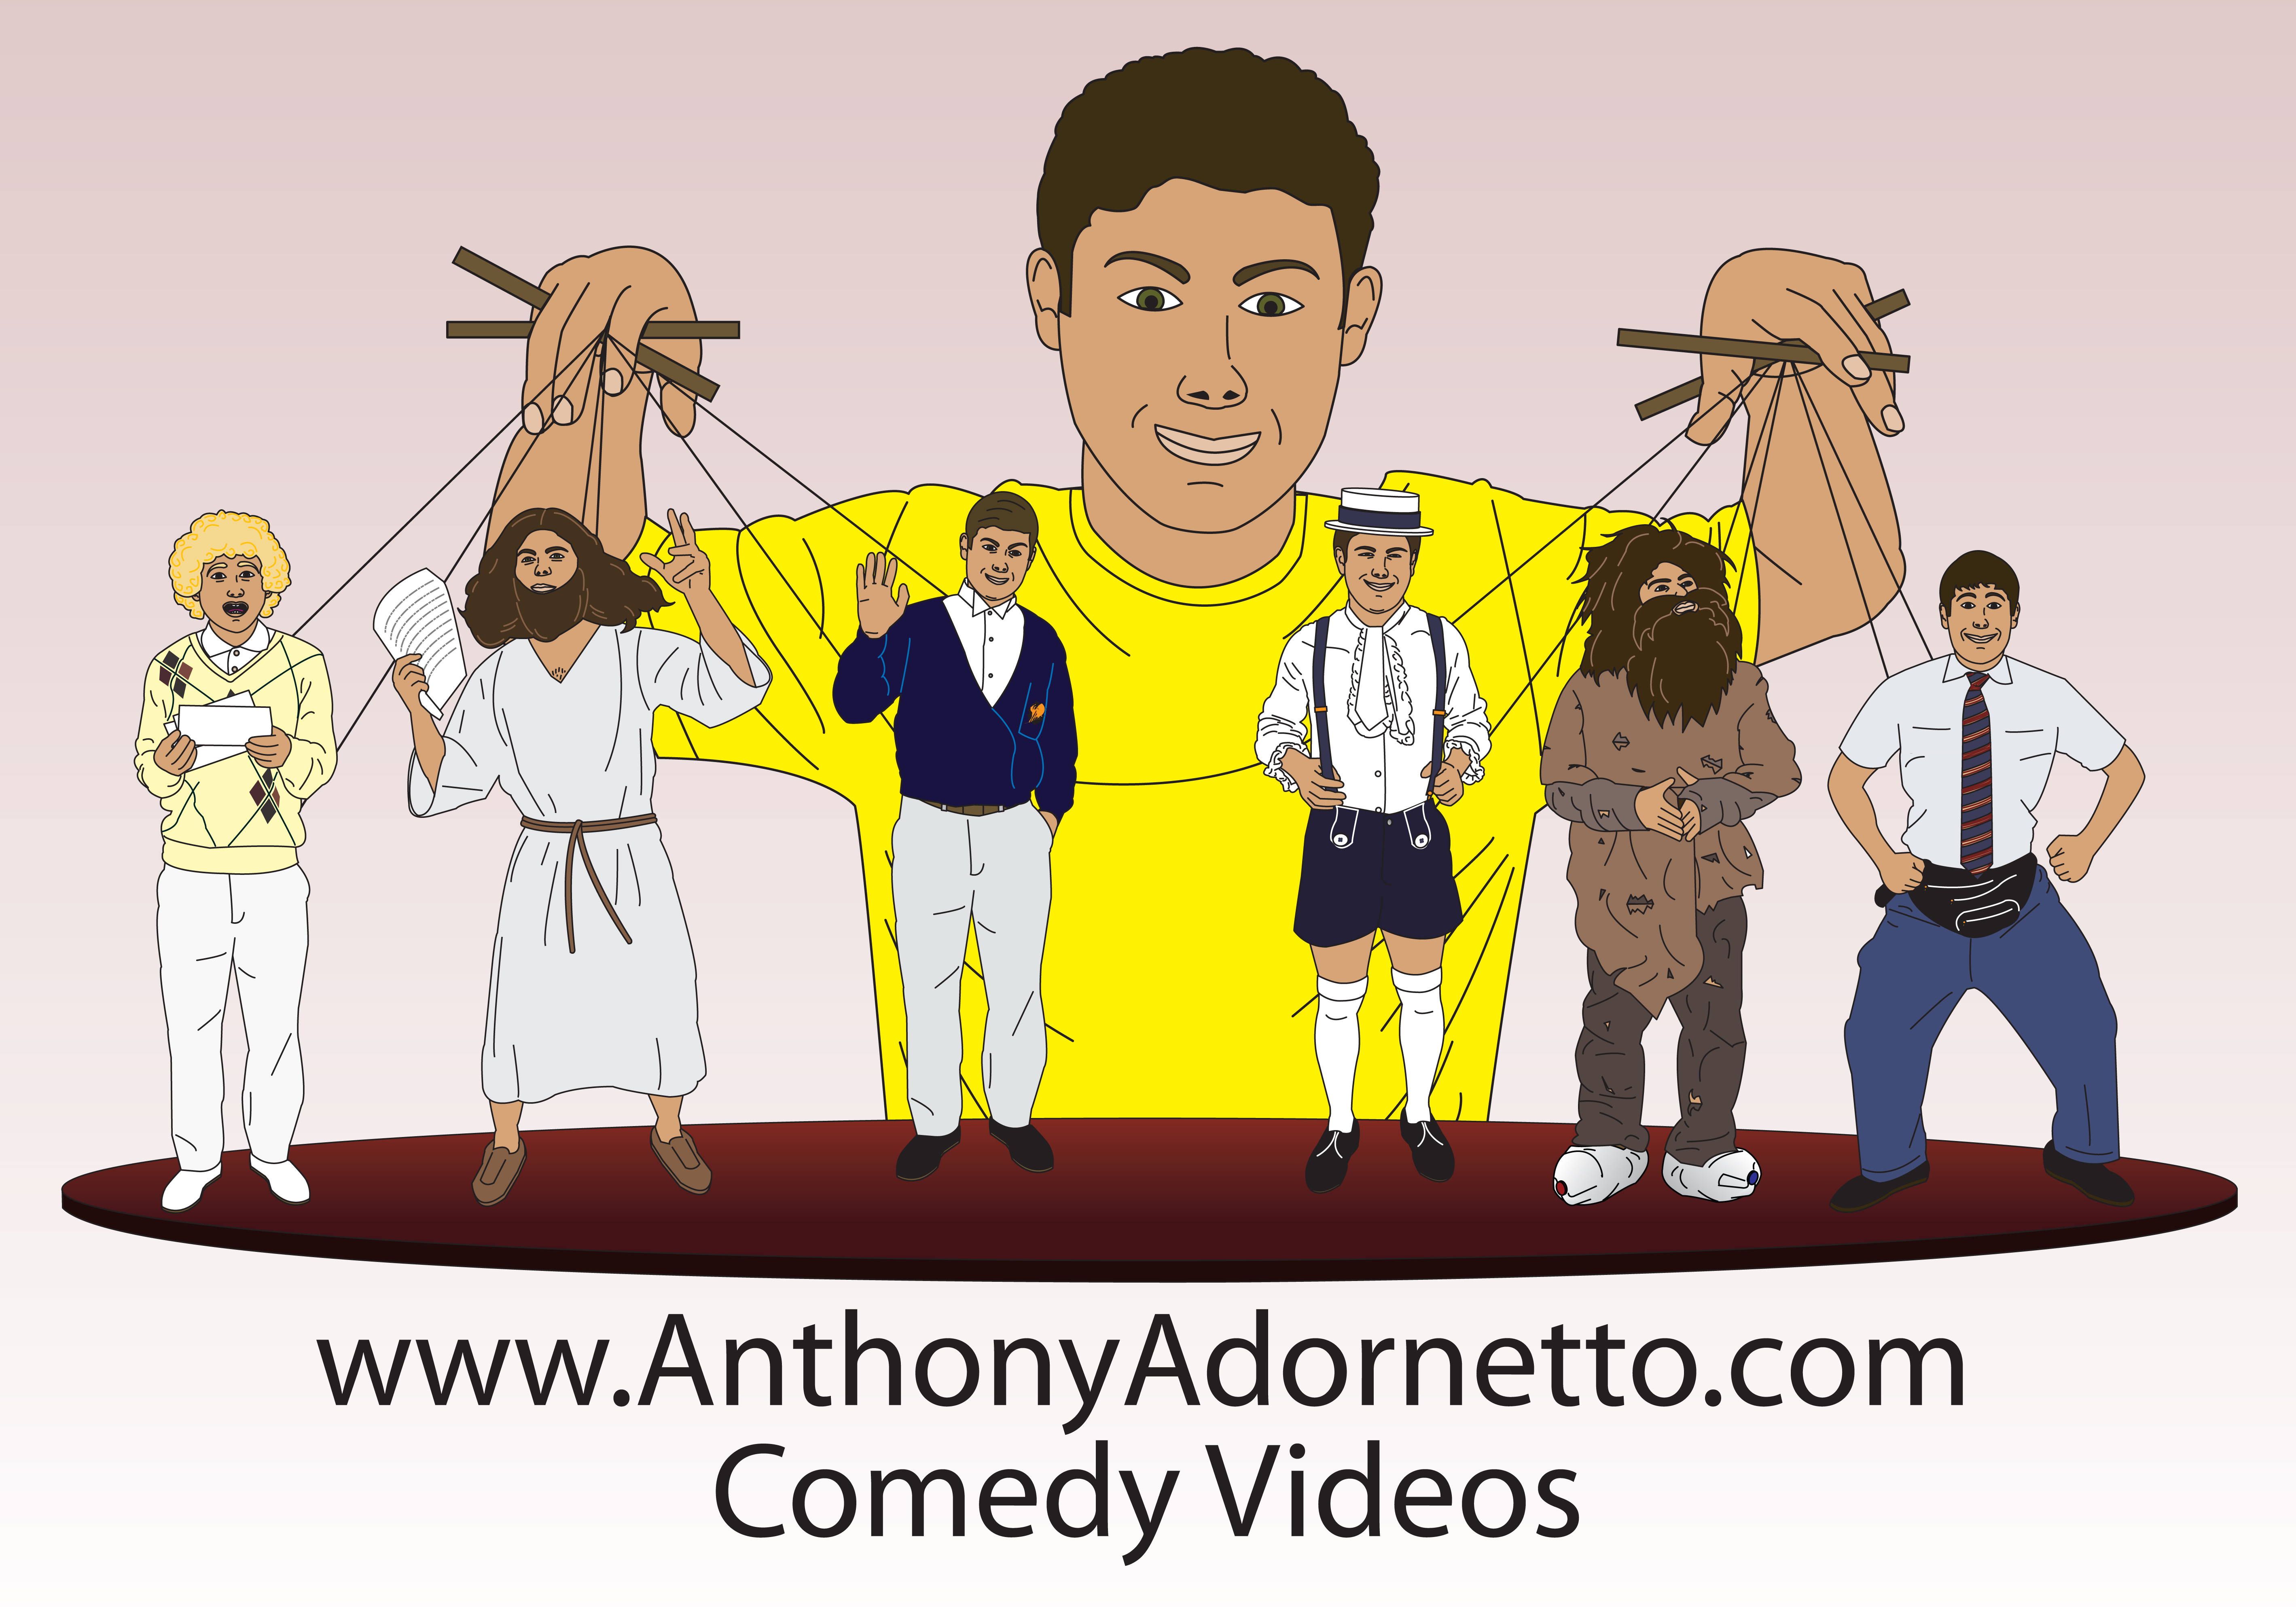 www.AnthonyAdornetto.com - Comedy Videos